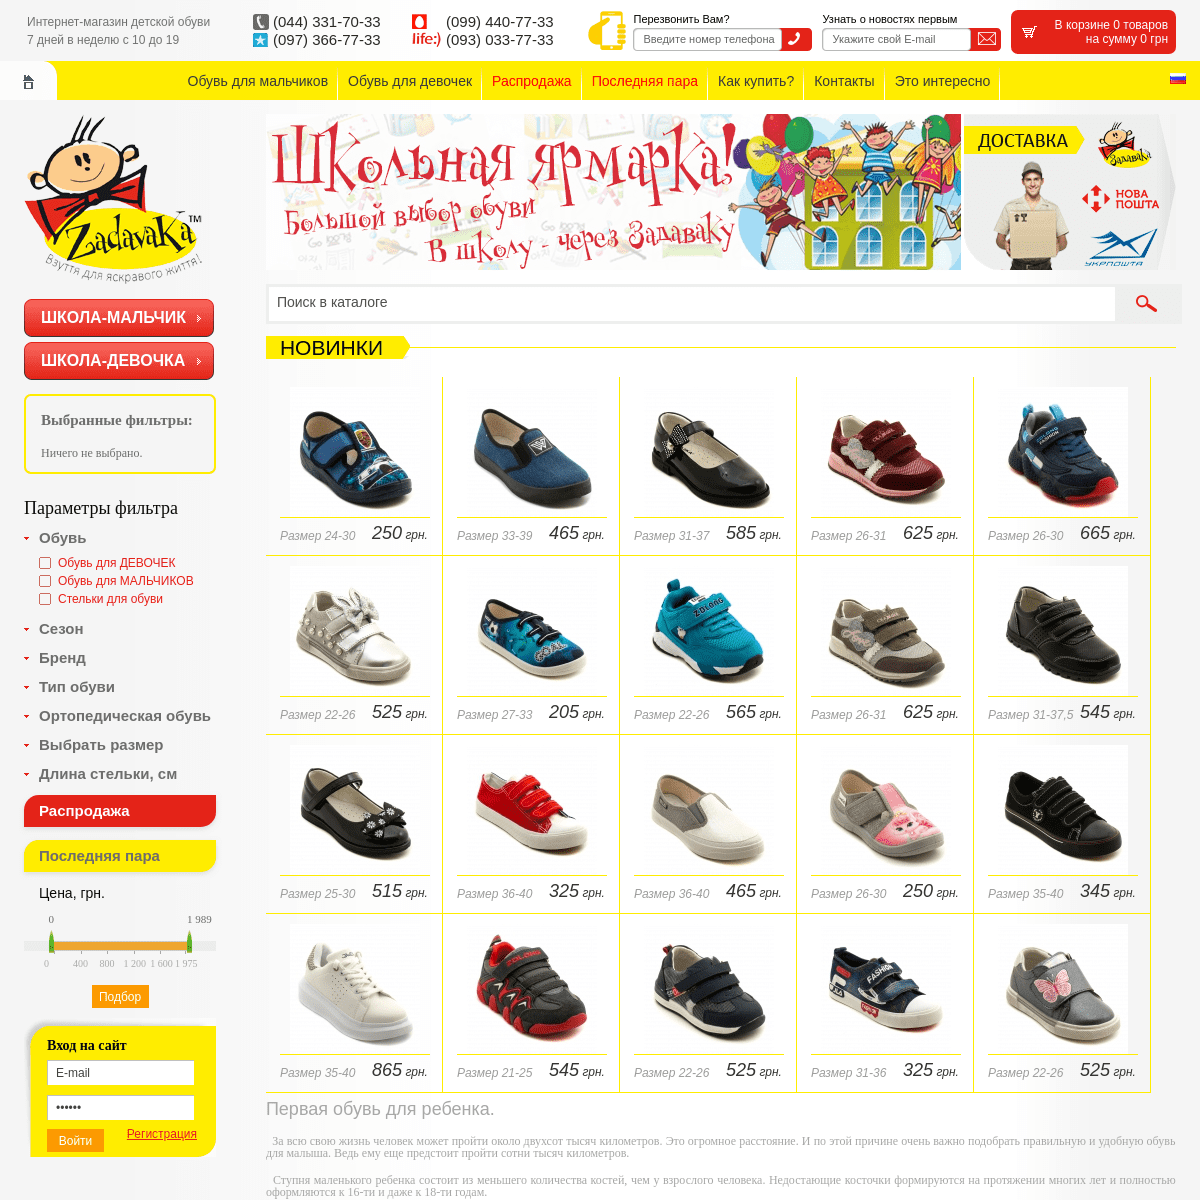 Задавака - интернет магазин детской обуви в Киеве.